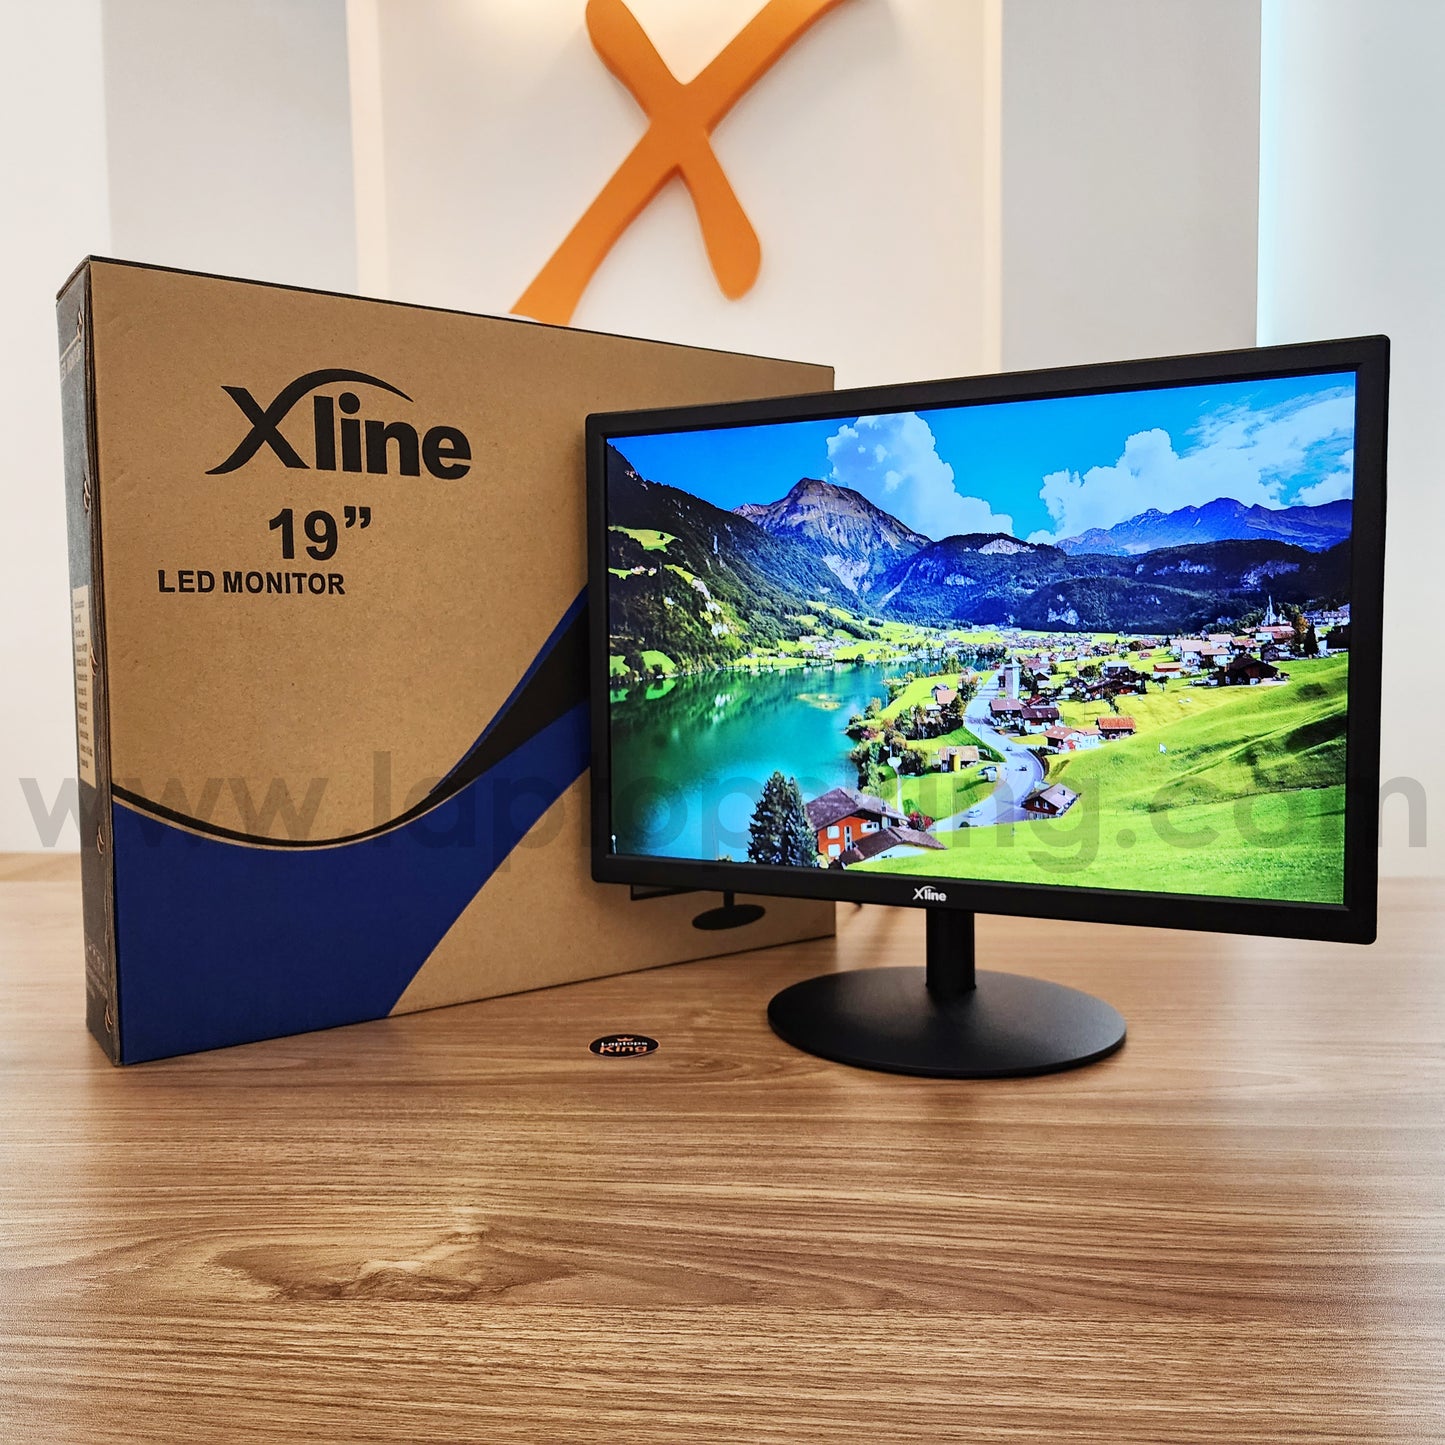 Xline X19B 19" Led Monitor Offer (Brand New)